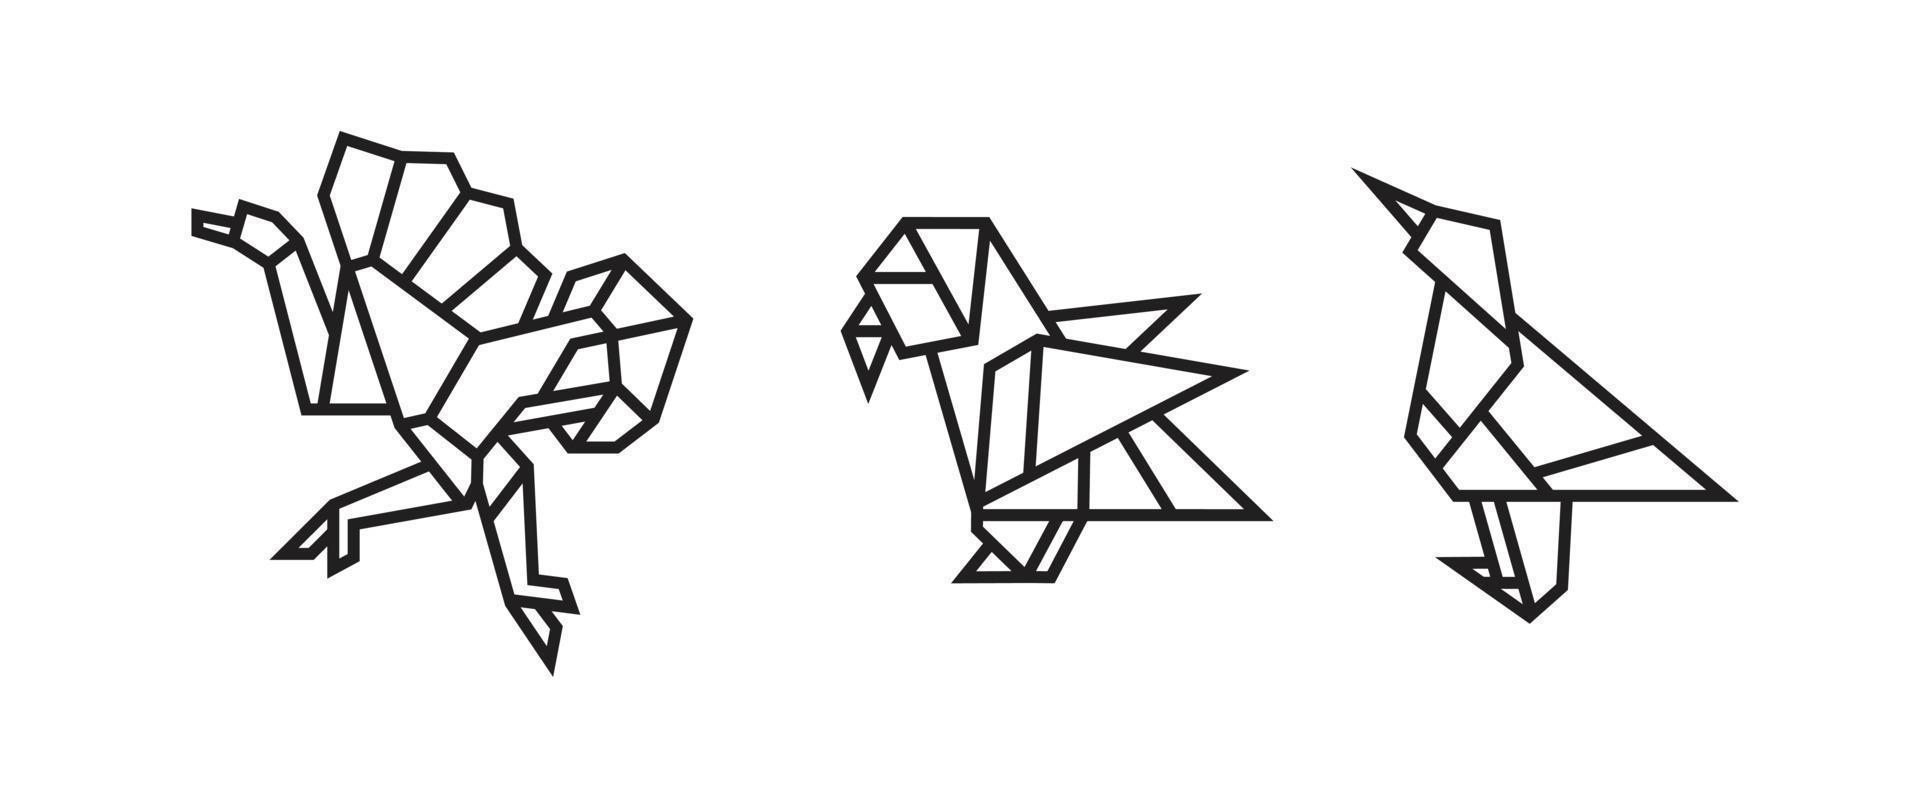 ilustraciones de aves en estilo origami vector